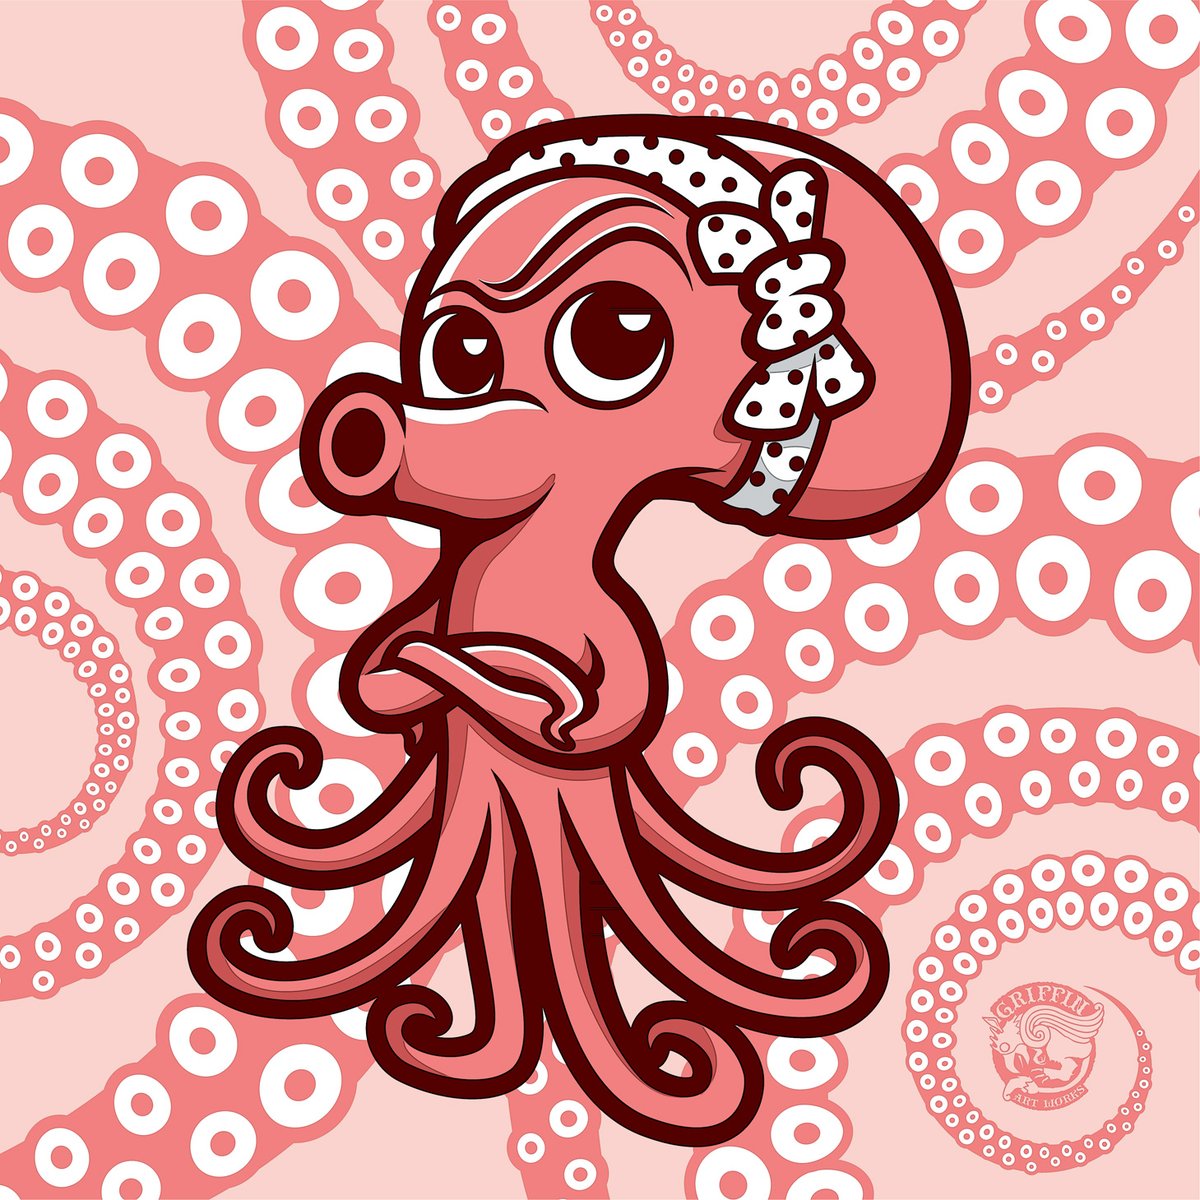 きょうは #タコの日 っチュー事で再掲ですが昔仕事で描いたボツキャラ。 
#イラスト #illustrations #OctopusDay 